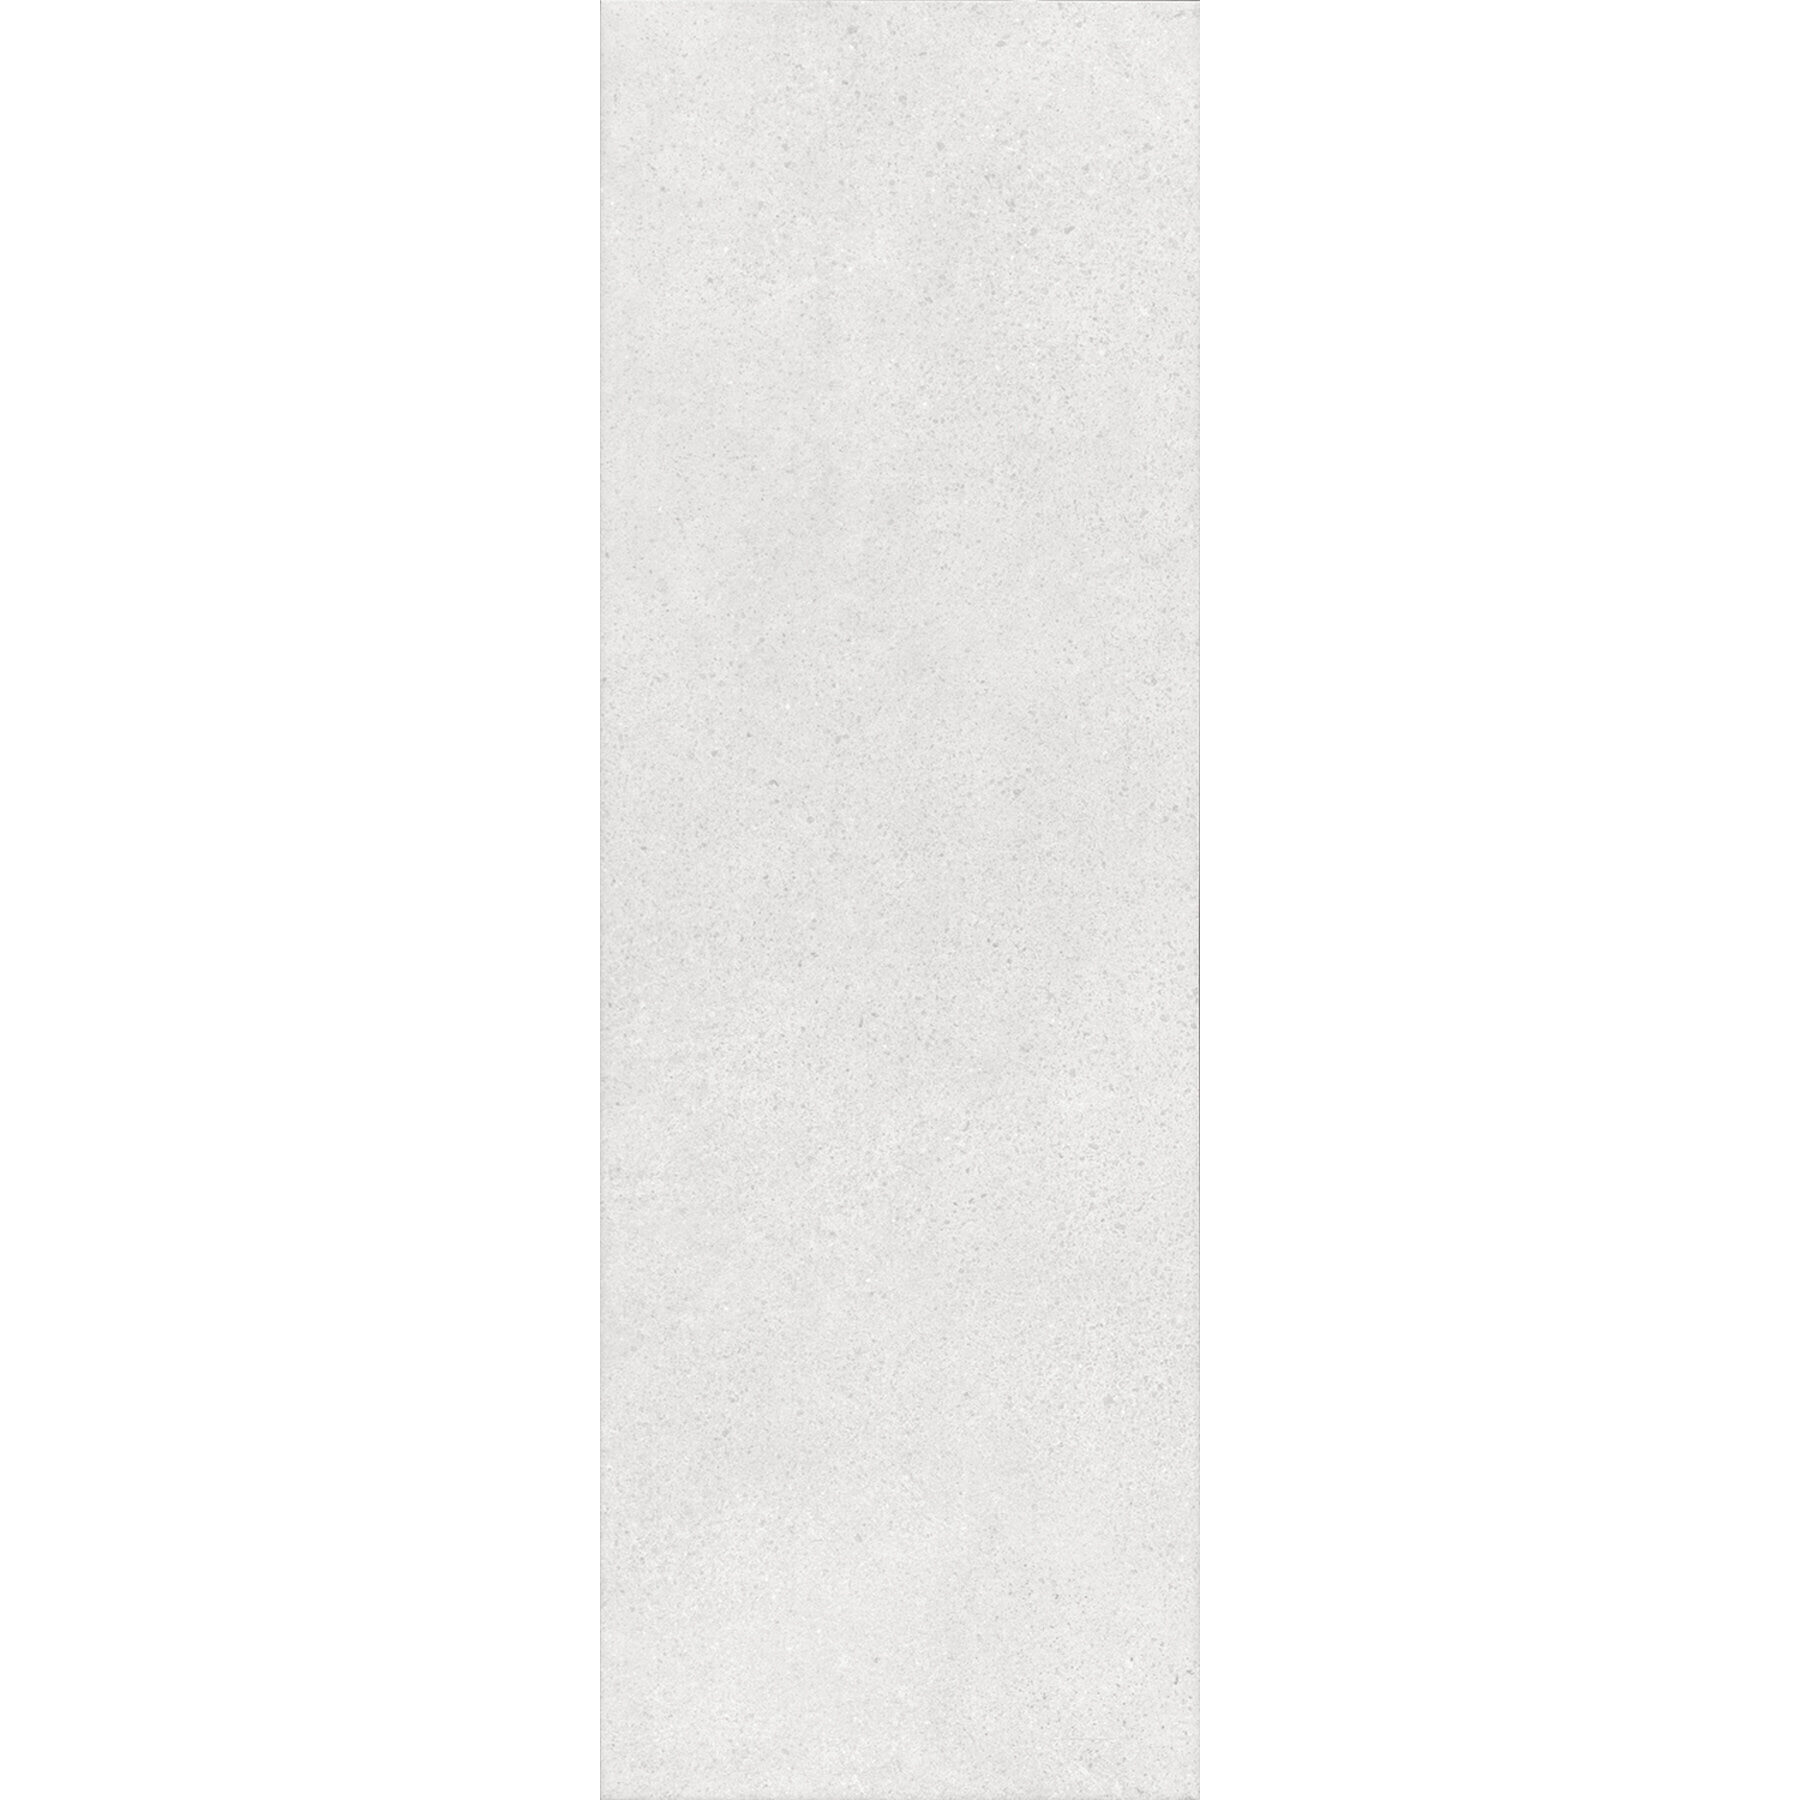 Плитка Kerama Marazzi Безана серый светлый обрезной 12136R 25x75 см плитка kerama marazzi диагональ белая структура 25x75 см 12119r